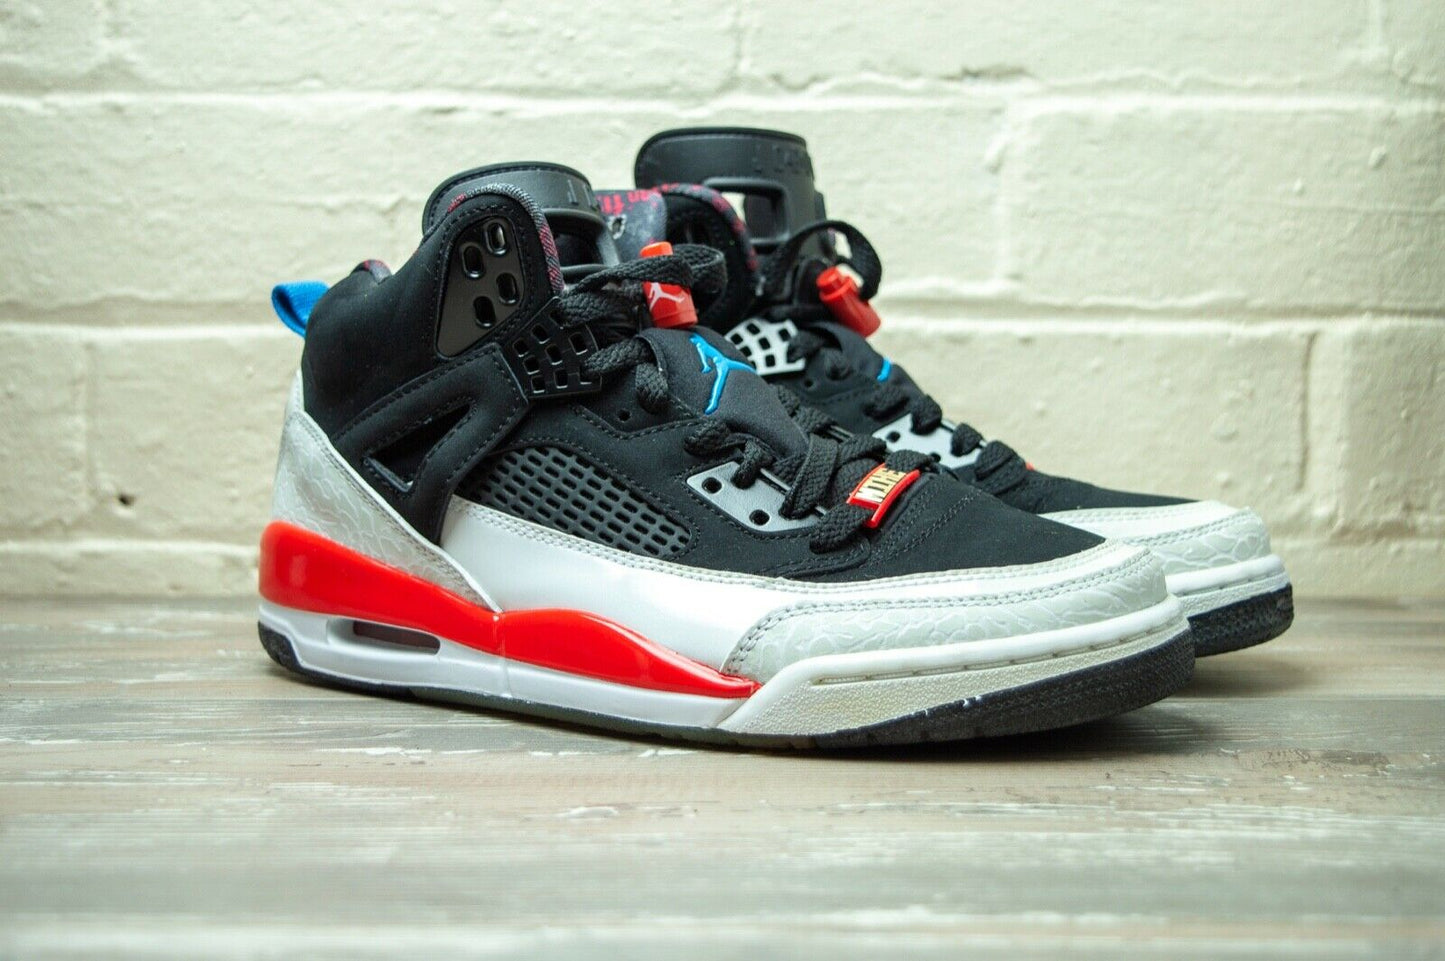 Nike Air Jordan Spizike Infrared 315371 002 -Nike Air Jordan Spizike Infrared 315371 002 -